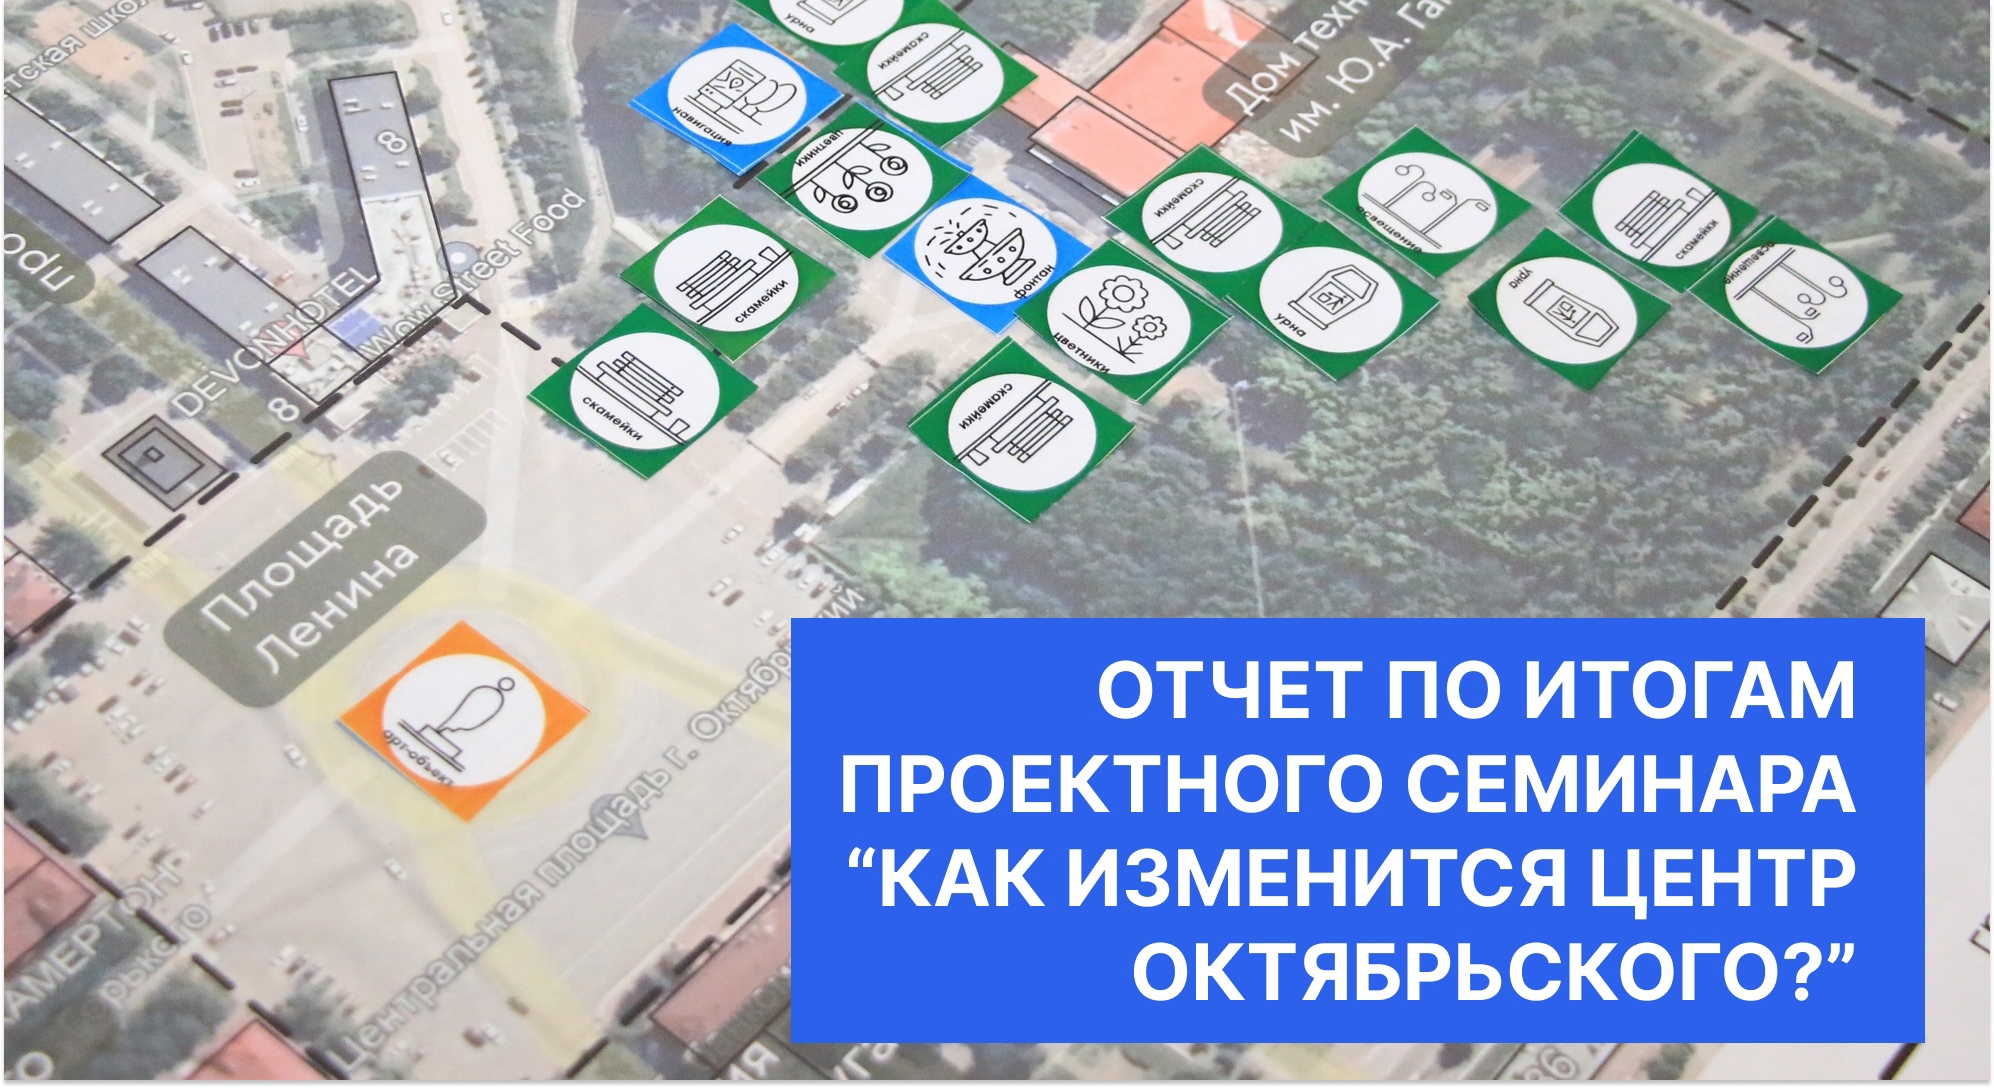 Подведены итоги общегородского проектного семинара "Как изменится центр Октябрьского?", прошедшего 19 сентября в гимназии №2